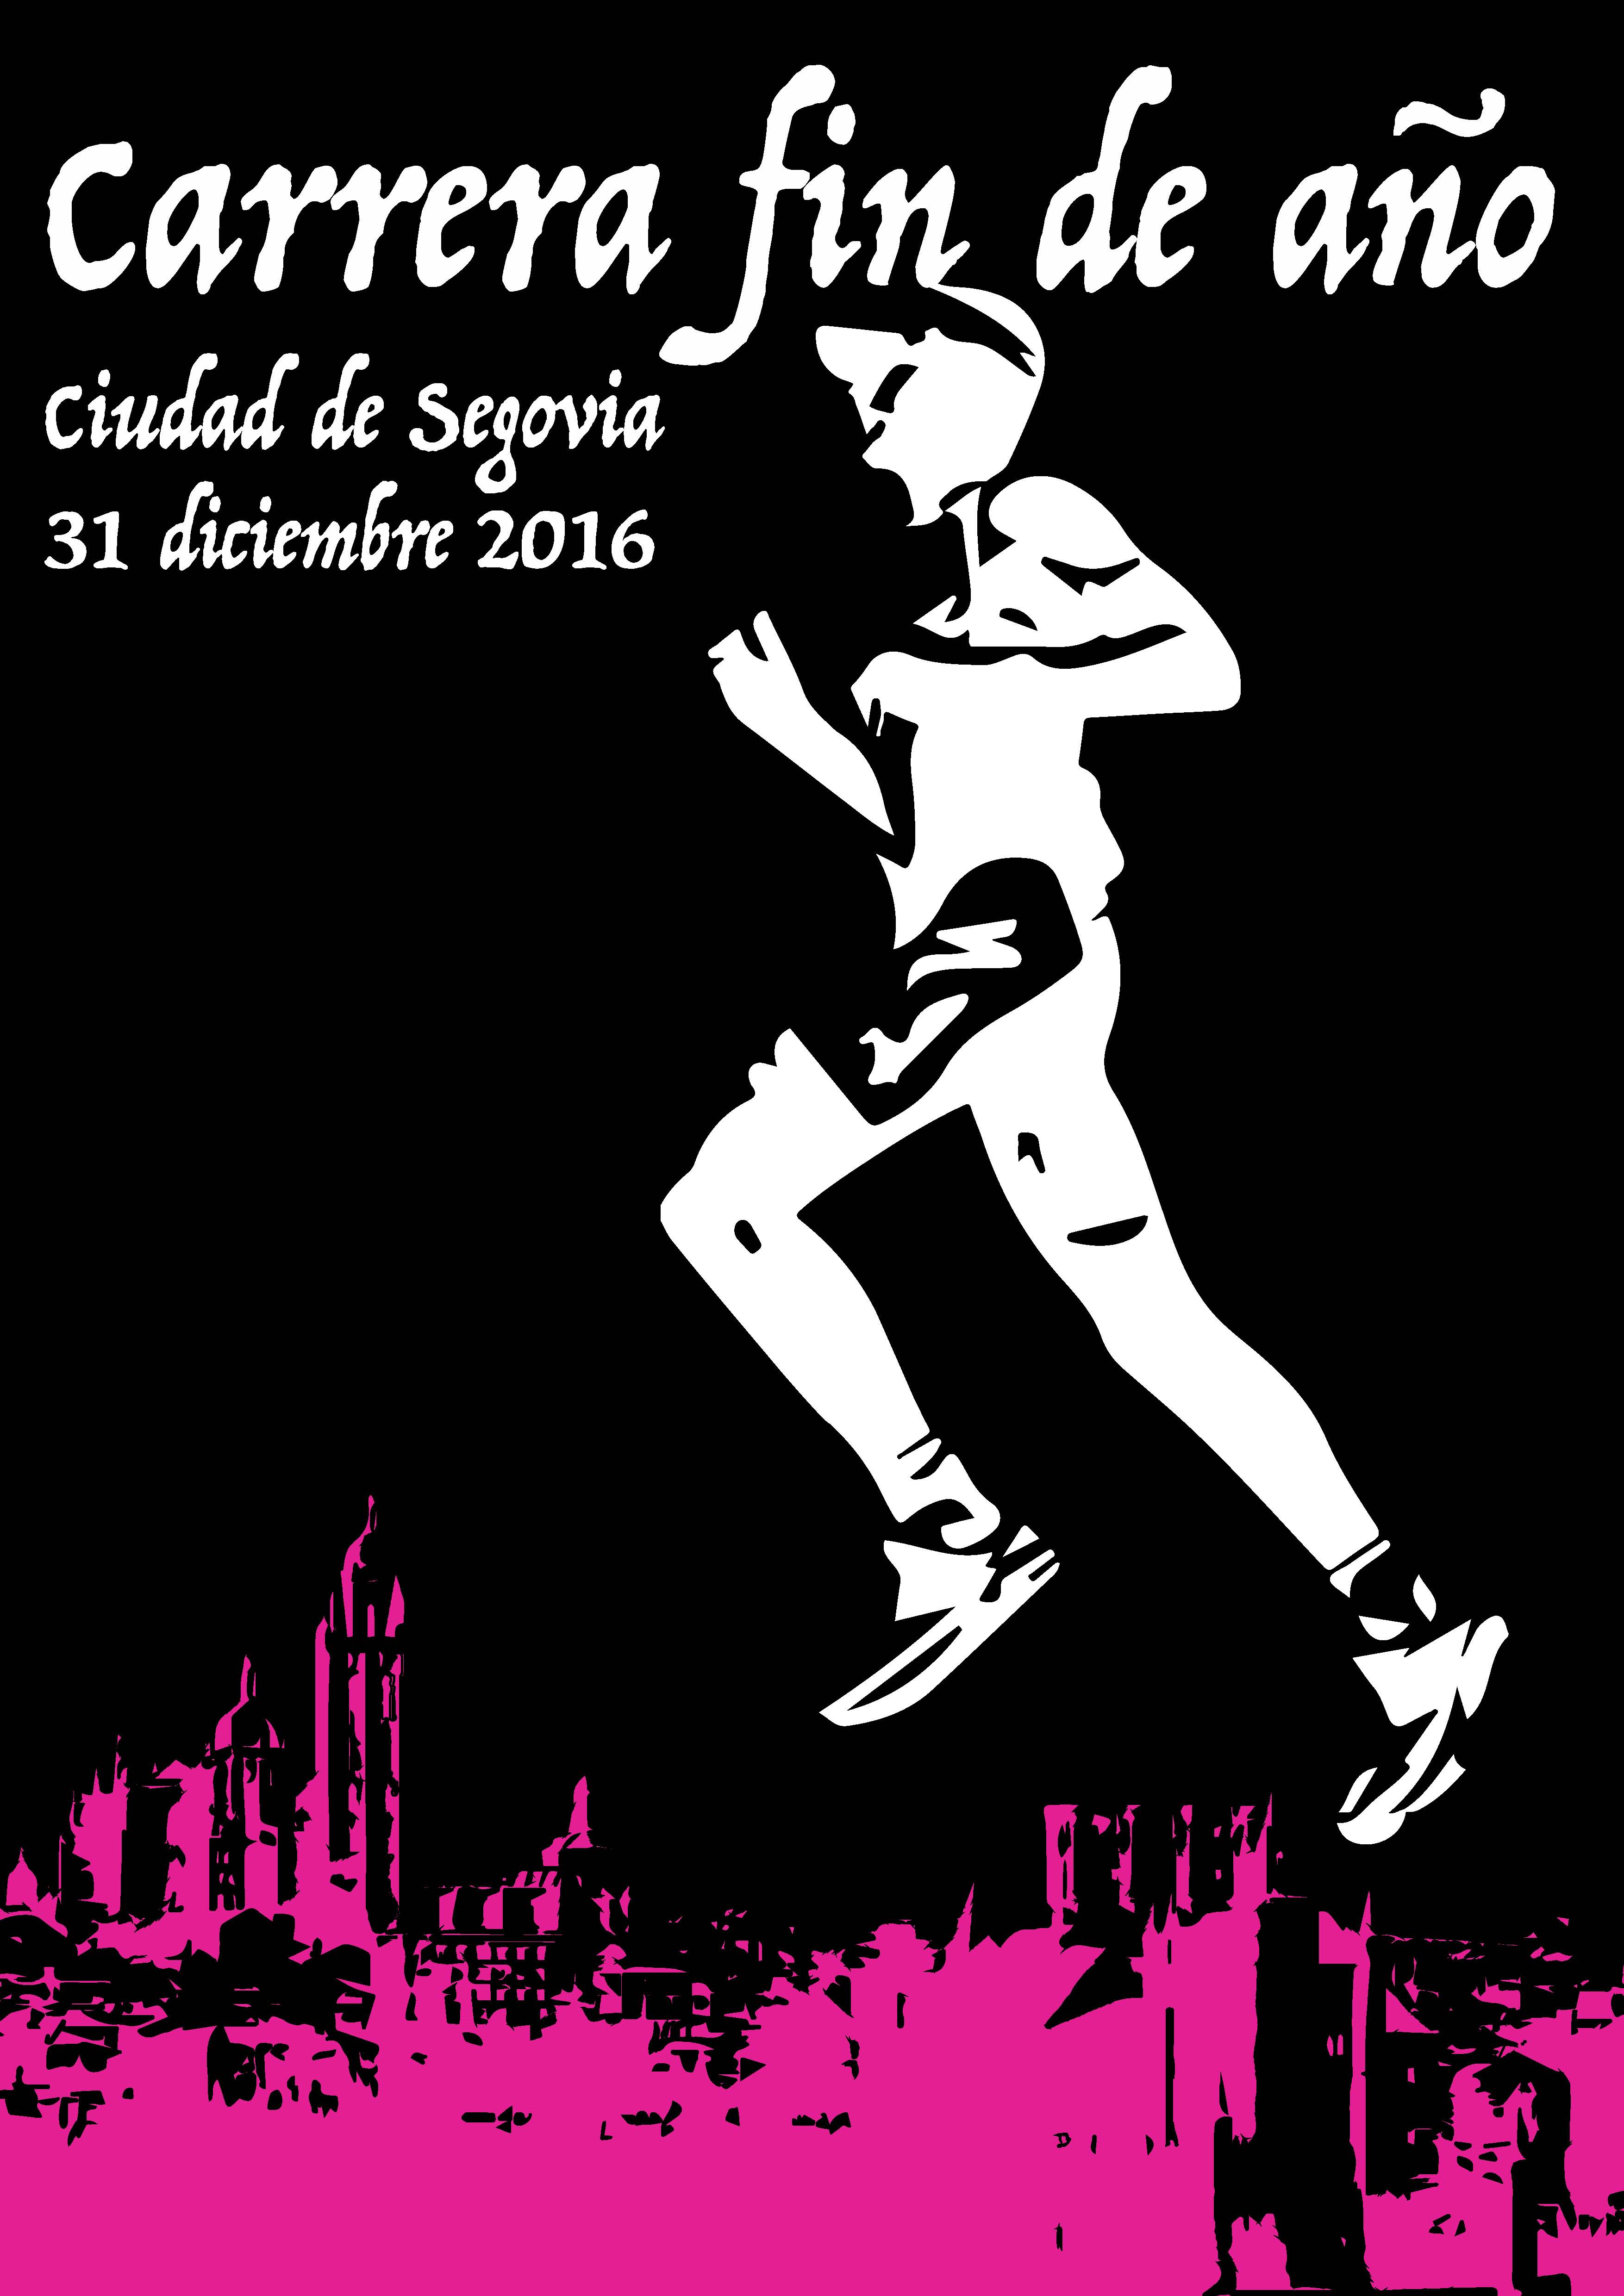 La Carrera Fin de Año “Ciudad de Segovia” incluye el concurso de fotografía y disfraces